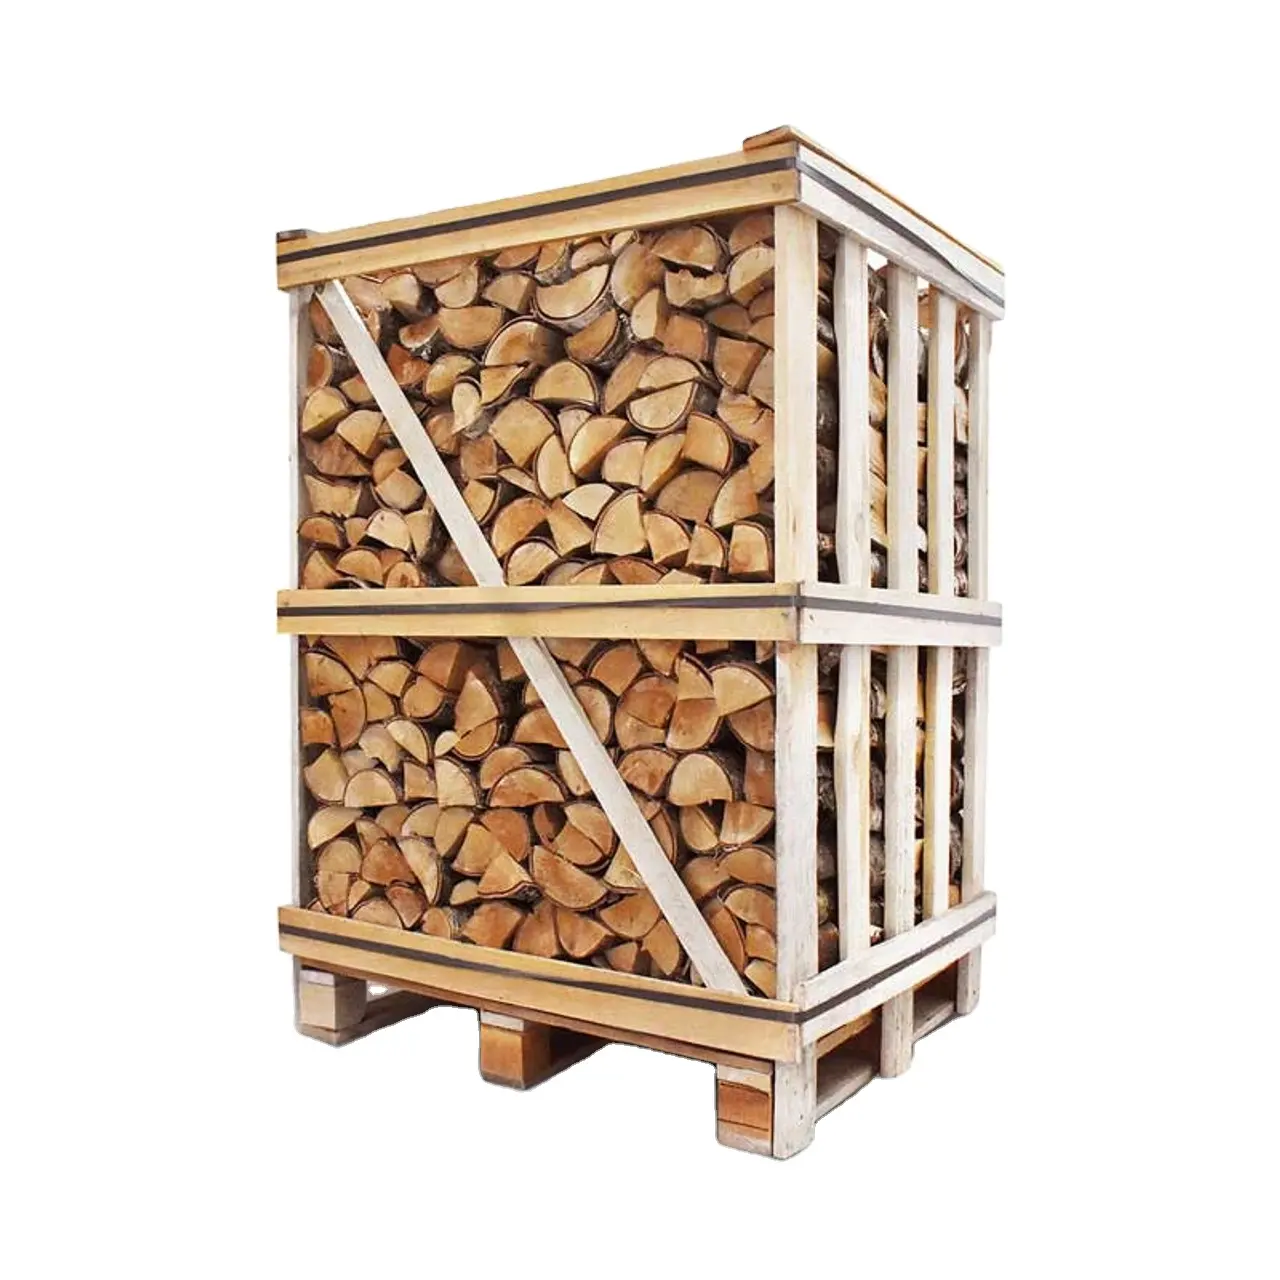 Buche Eiche Brennholz auf Paletten/trockenes Brennholz zu günstigen Preisen Funktions spezifikation